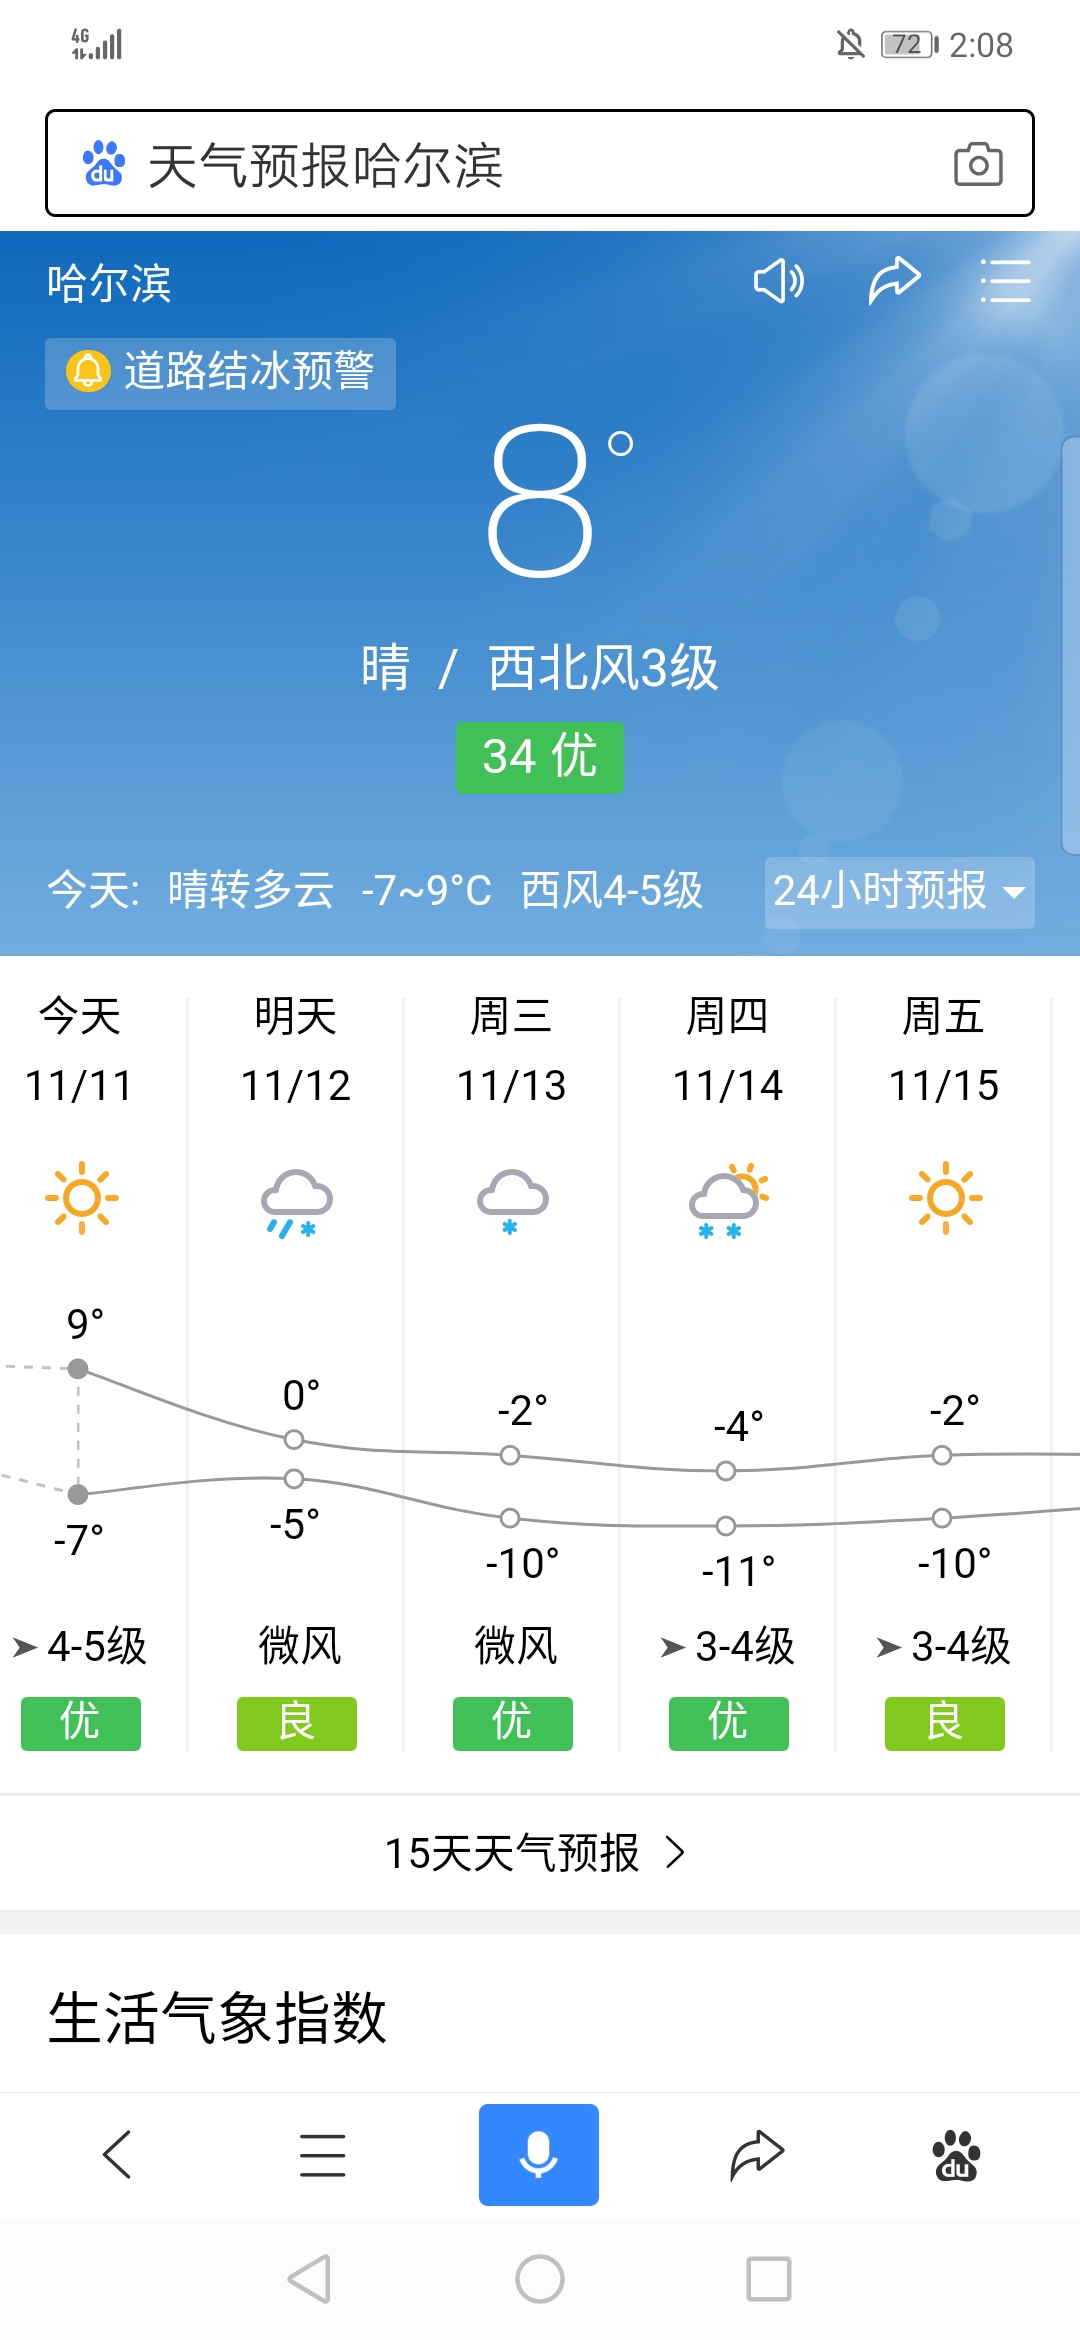 哈尔滨十五天天气预报15天